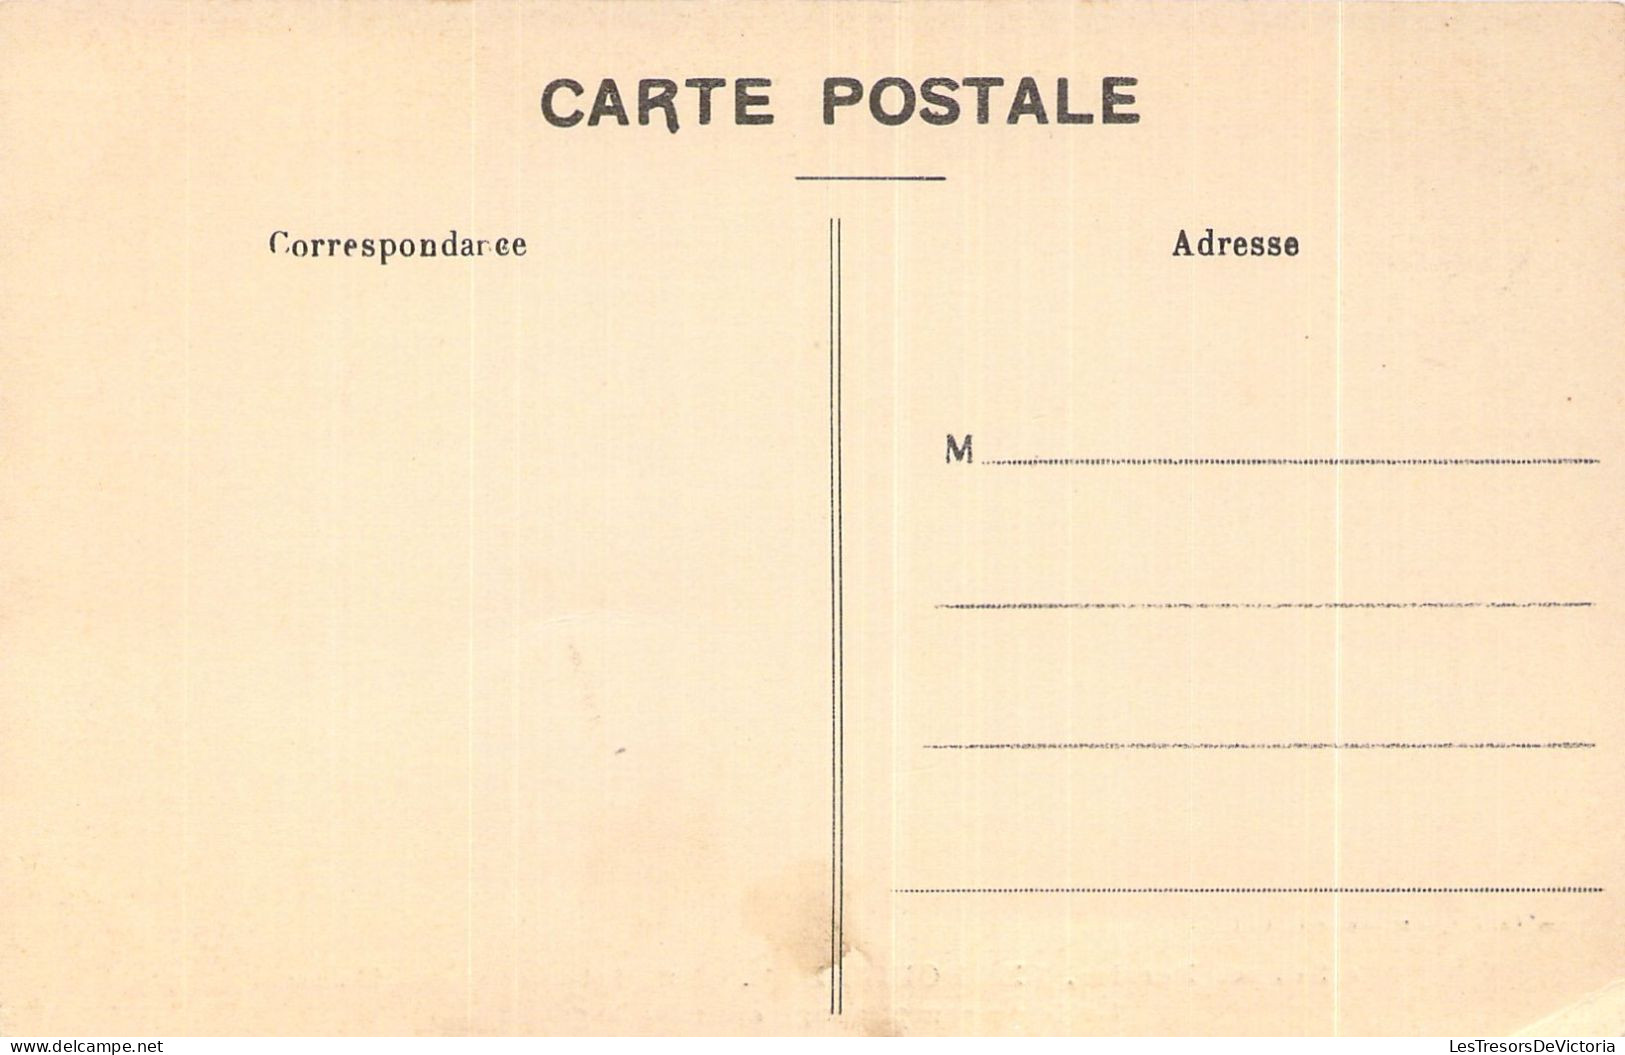 FRANCE - 30 - La Source Perrier - LES BOUILLENS - Salle De Remplissage Et Emballage  - Carte Postale Ancienne - Autres & Non Classés